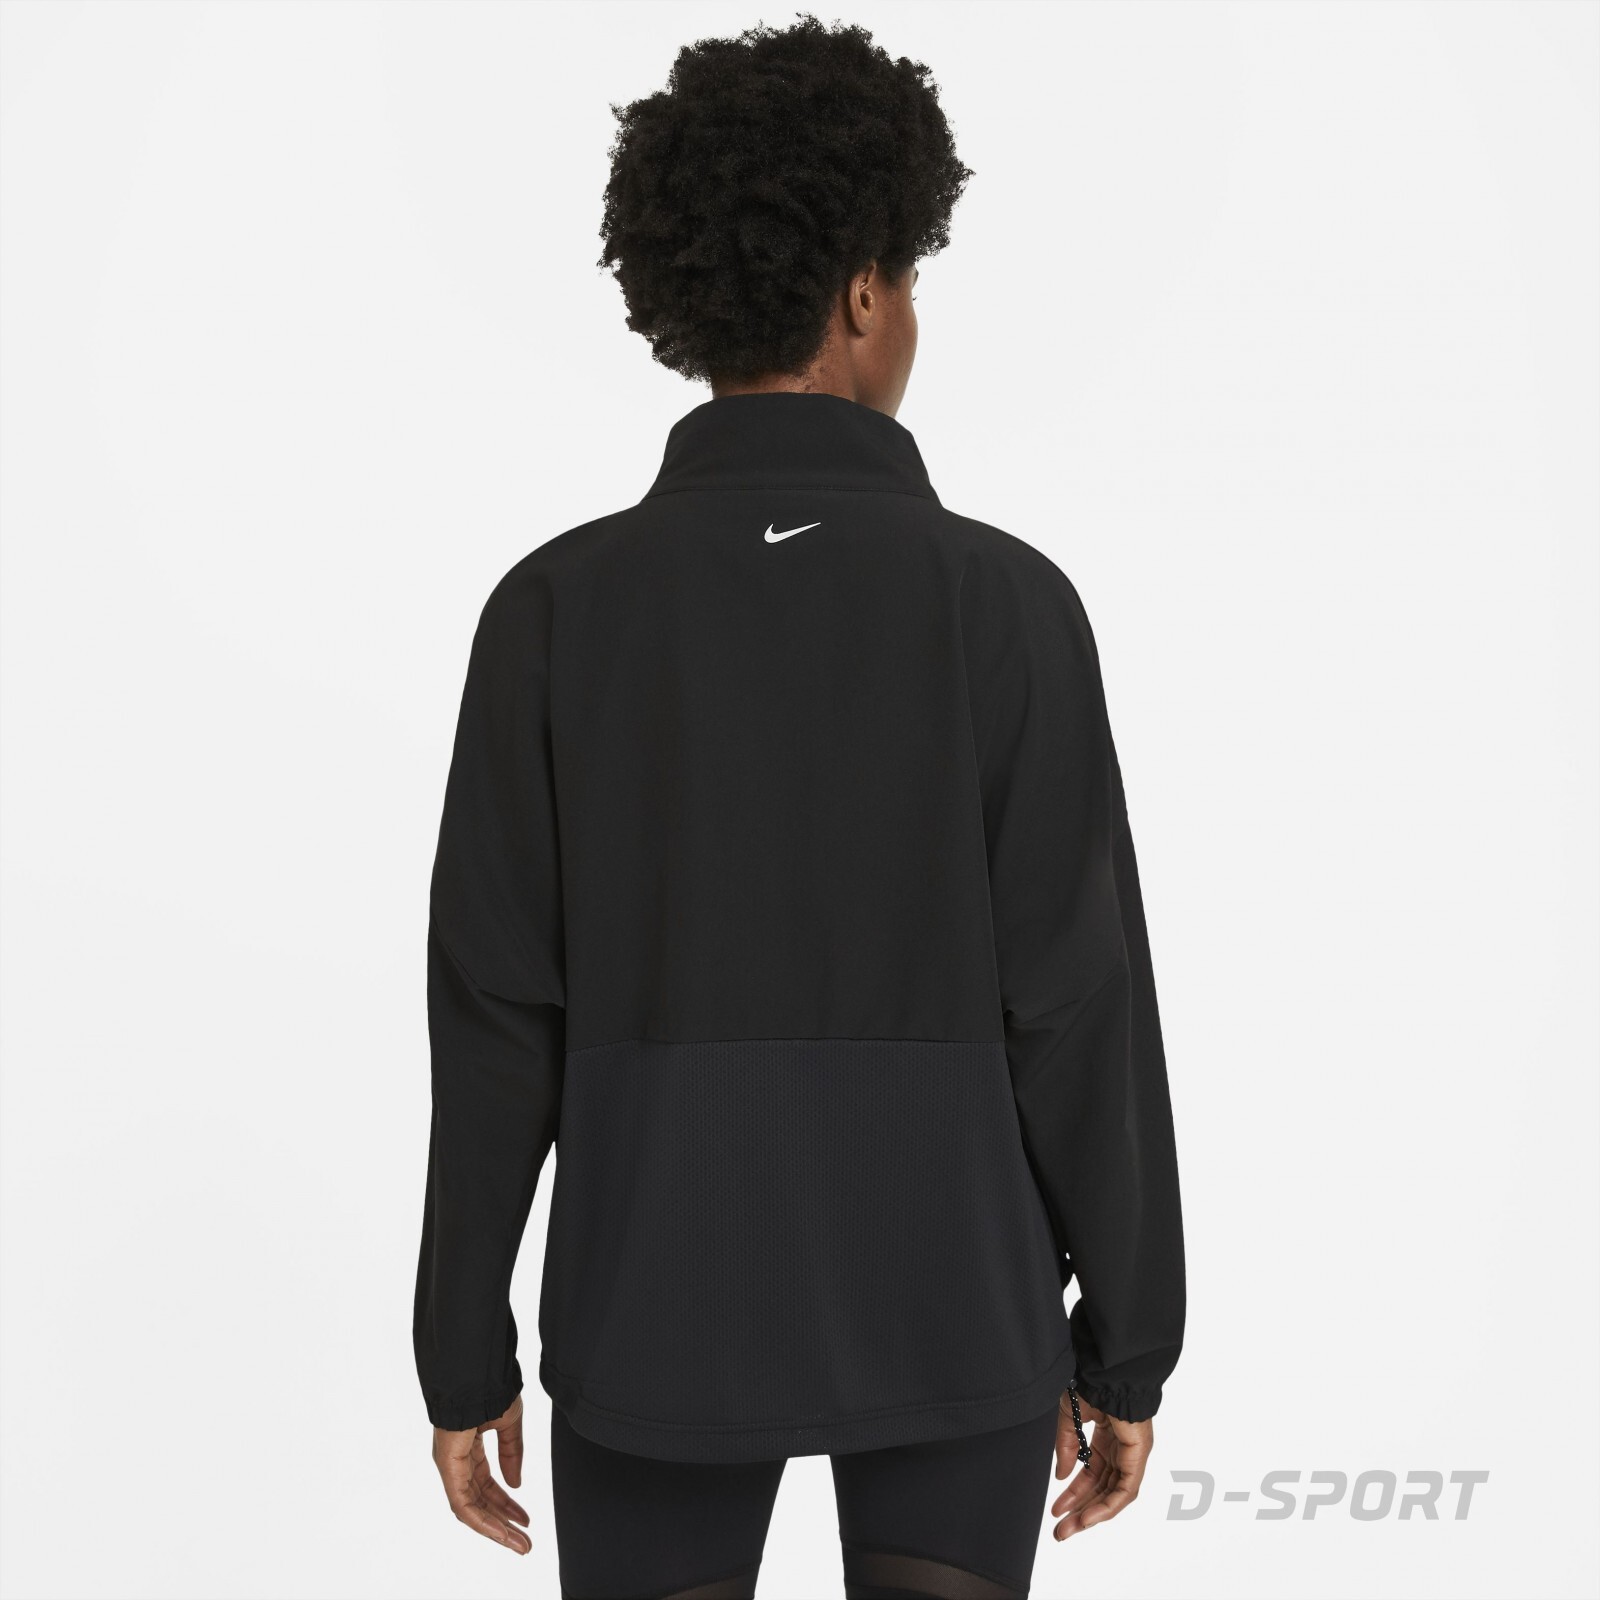 Nike Pro